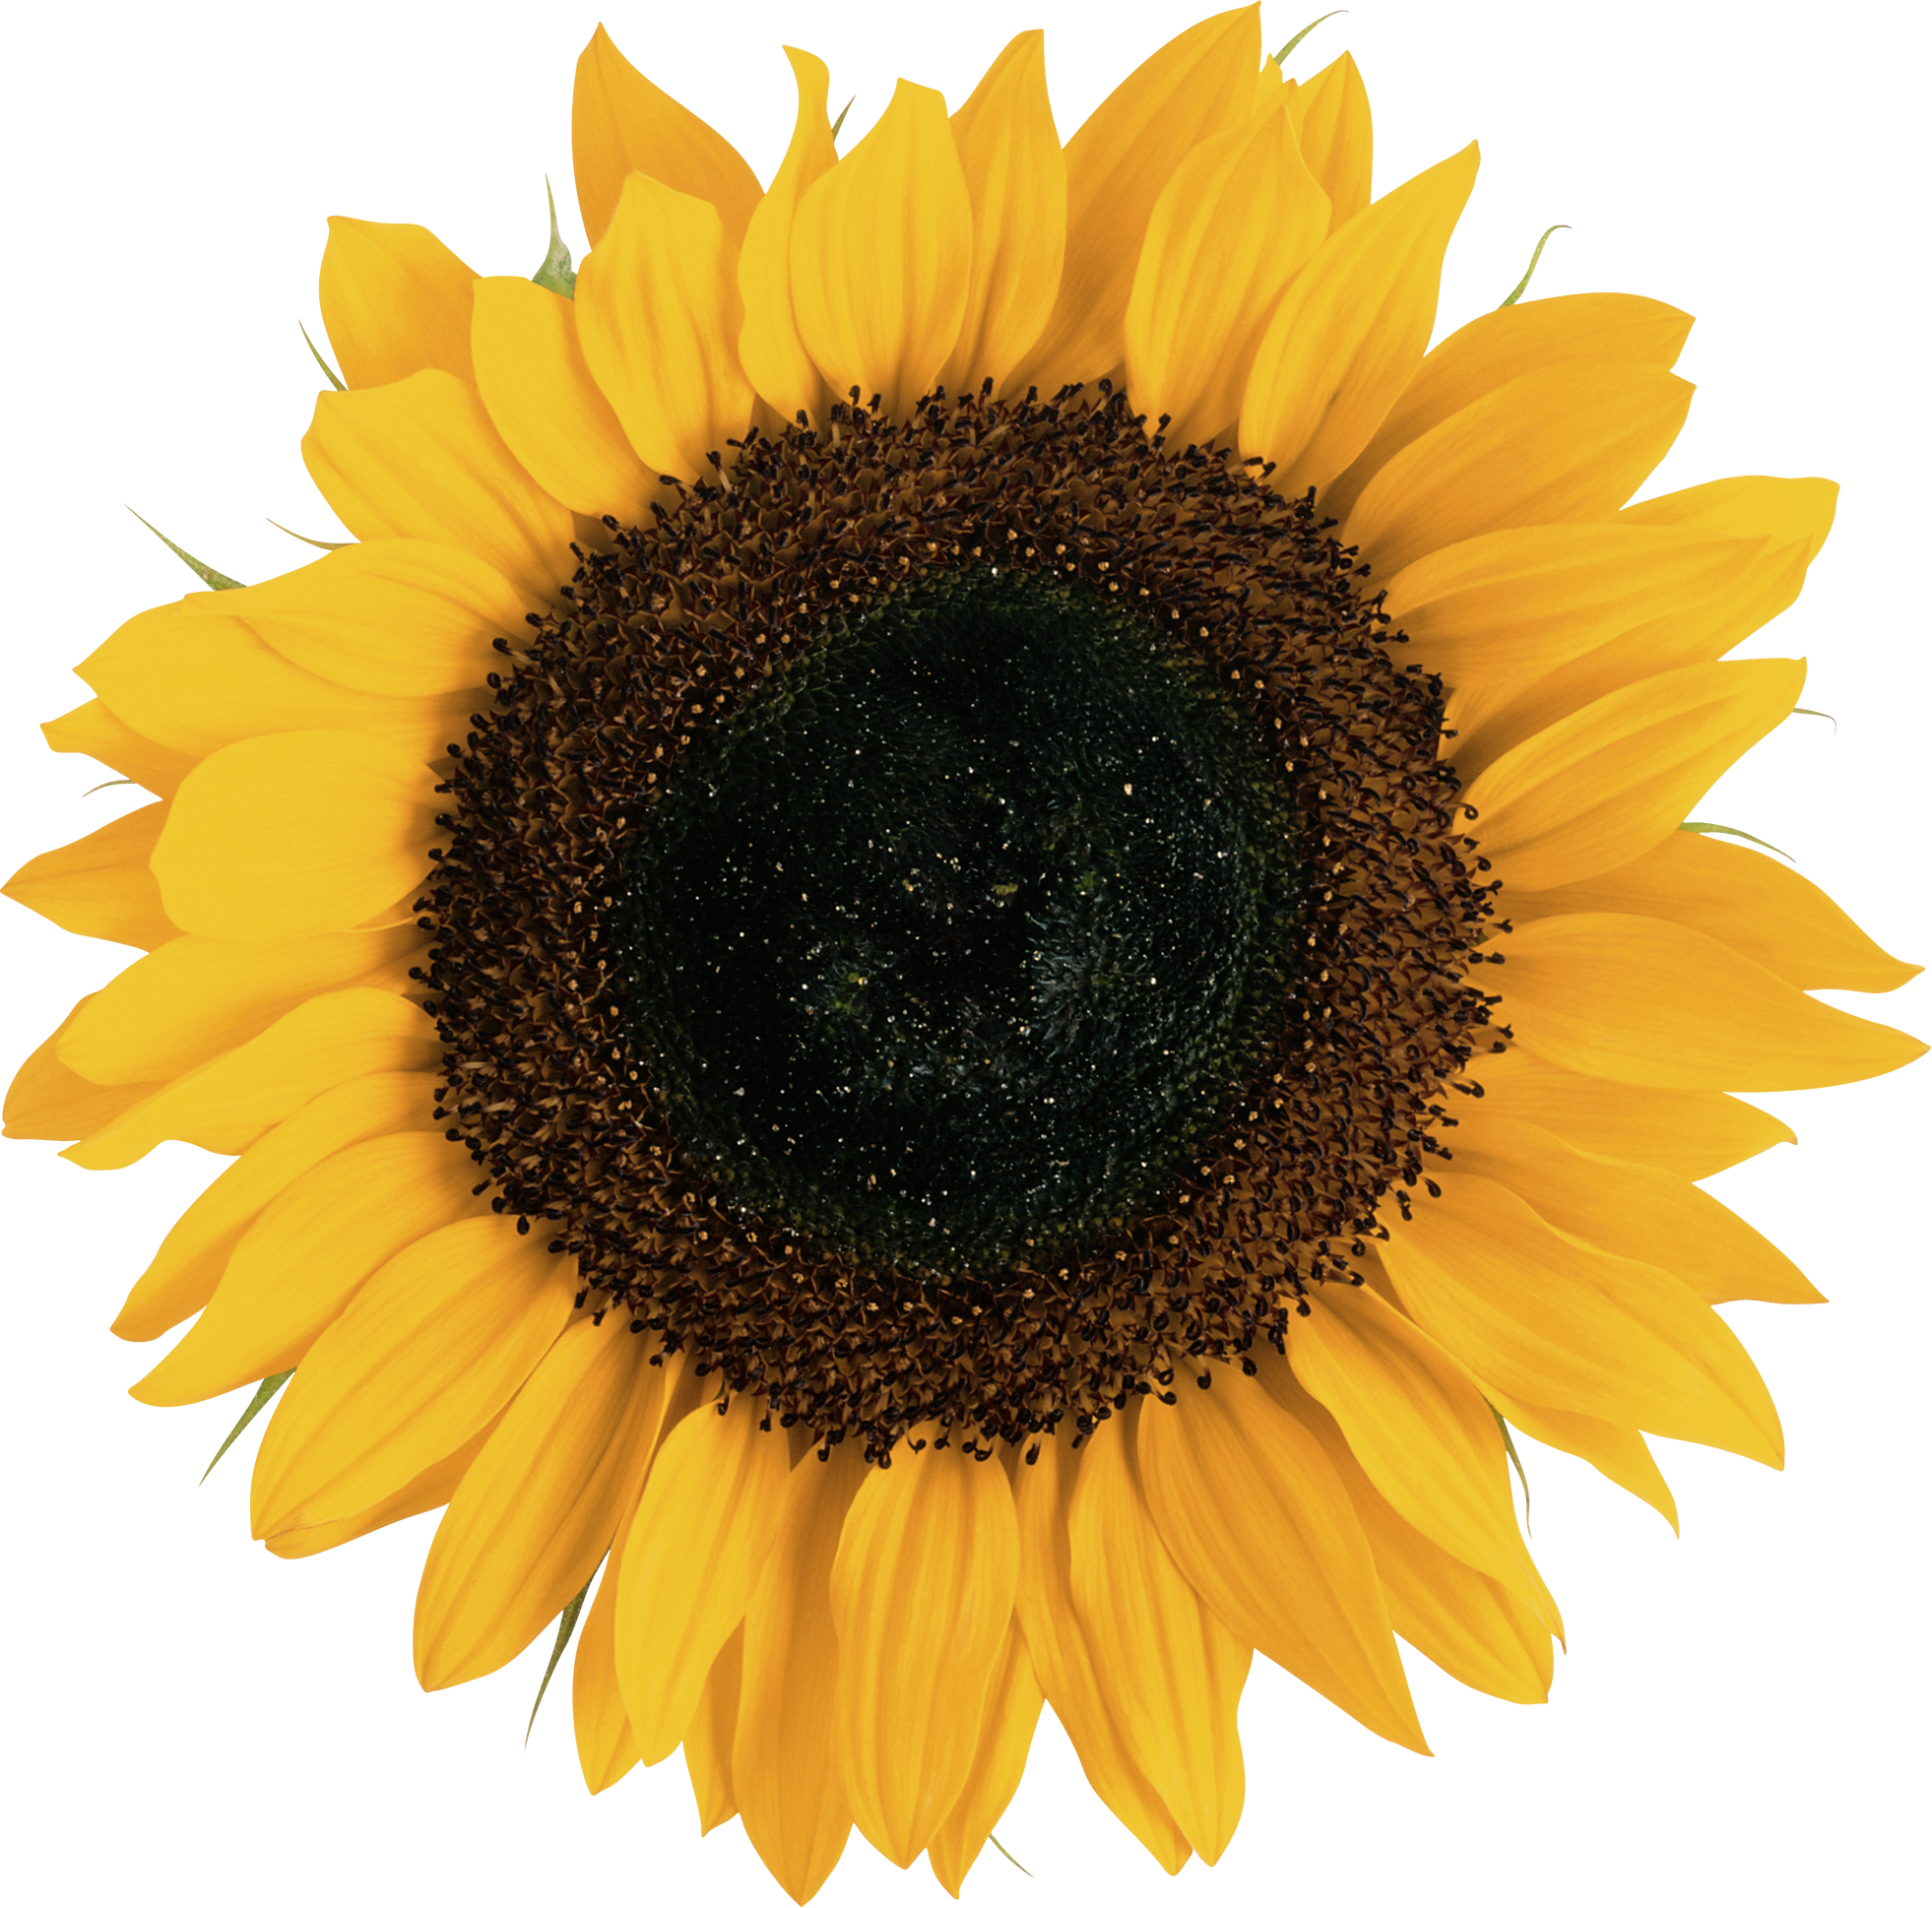 Common sunflower Euclidean vector Illustration.